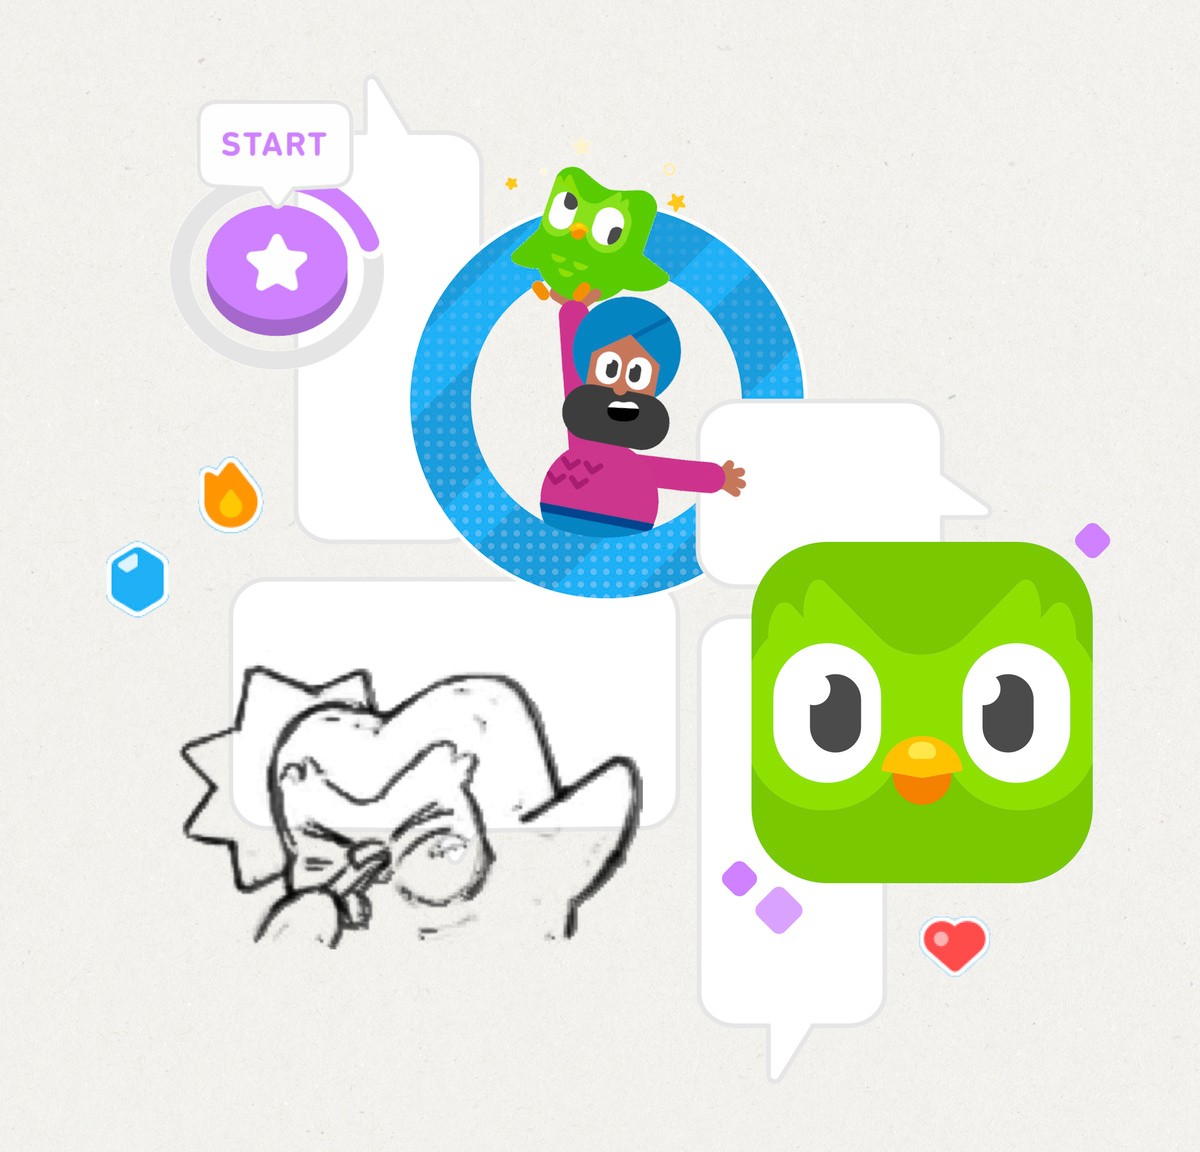 Duolingo lança aplicativo que ensina matemática